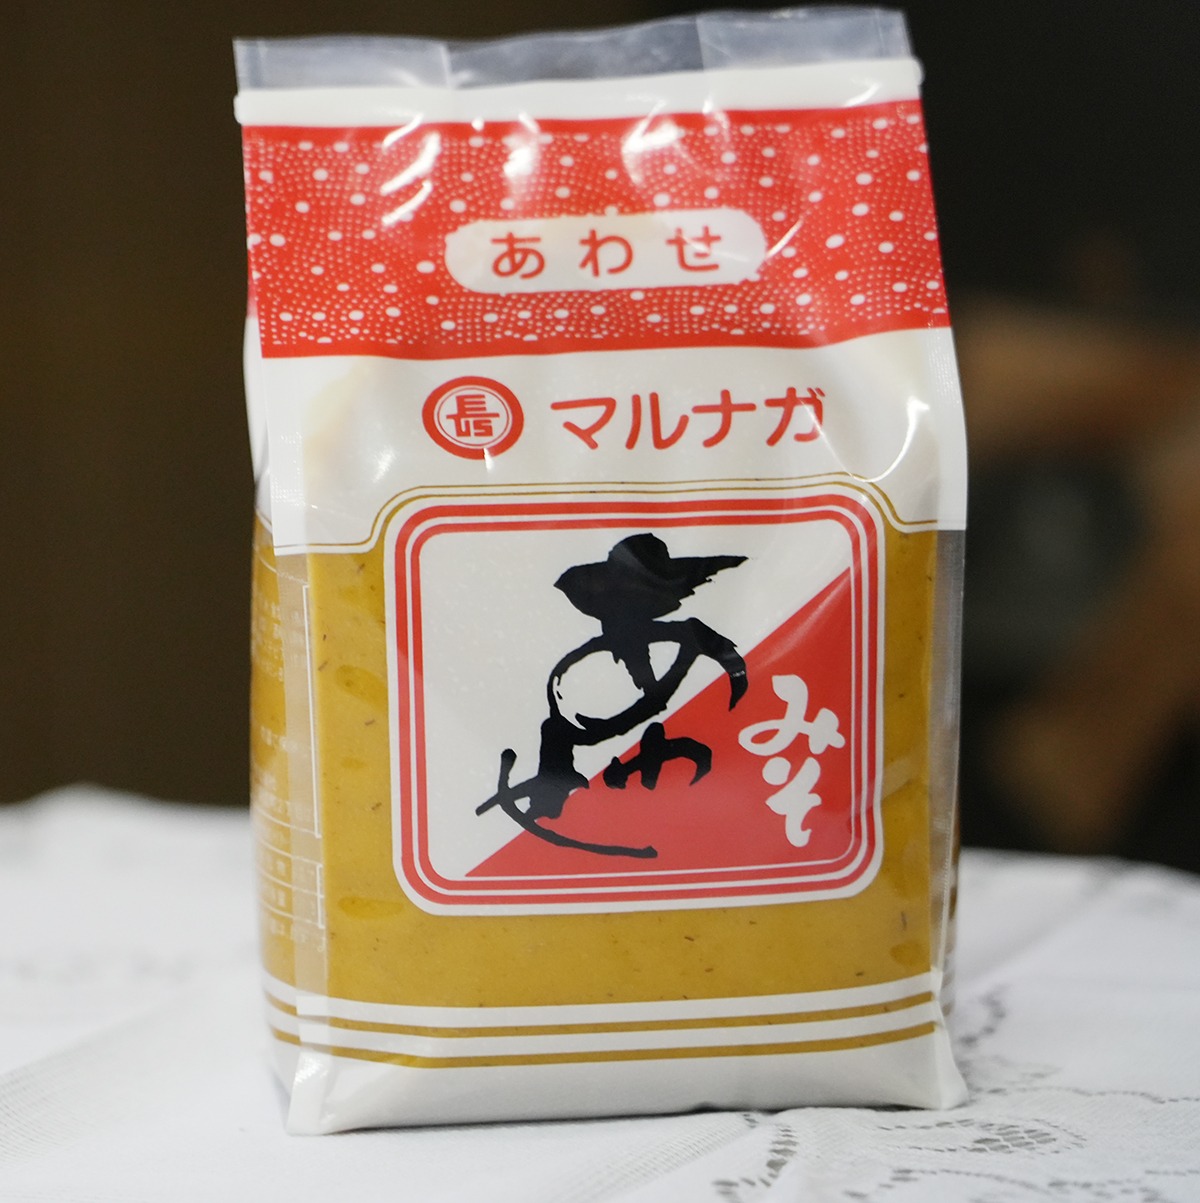 マルナガ醤油の味噌の写真